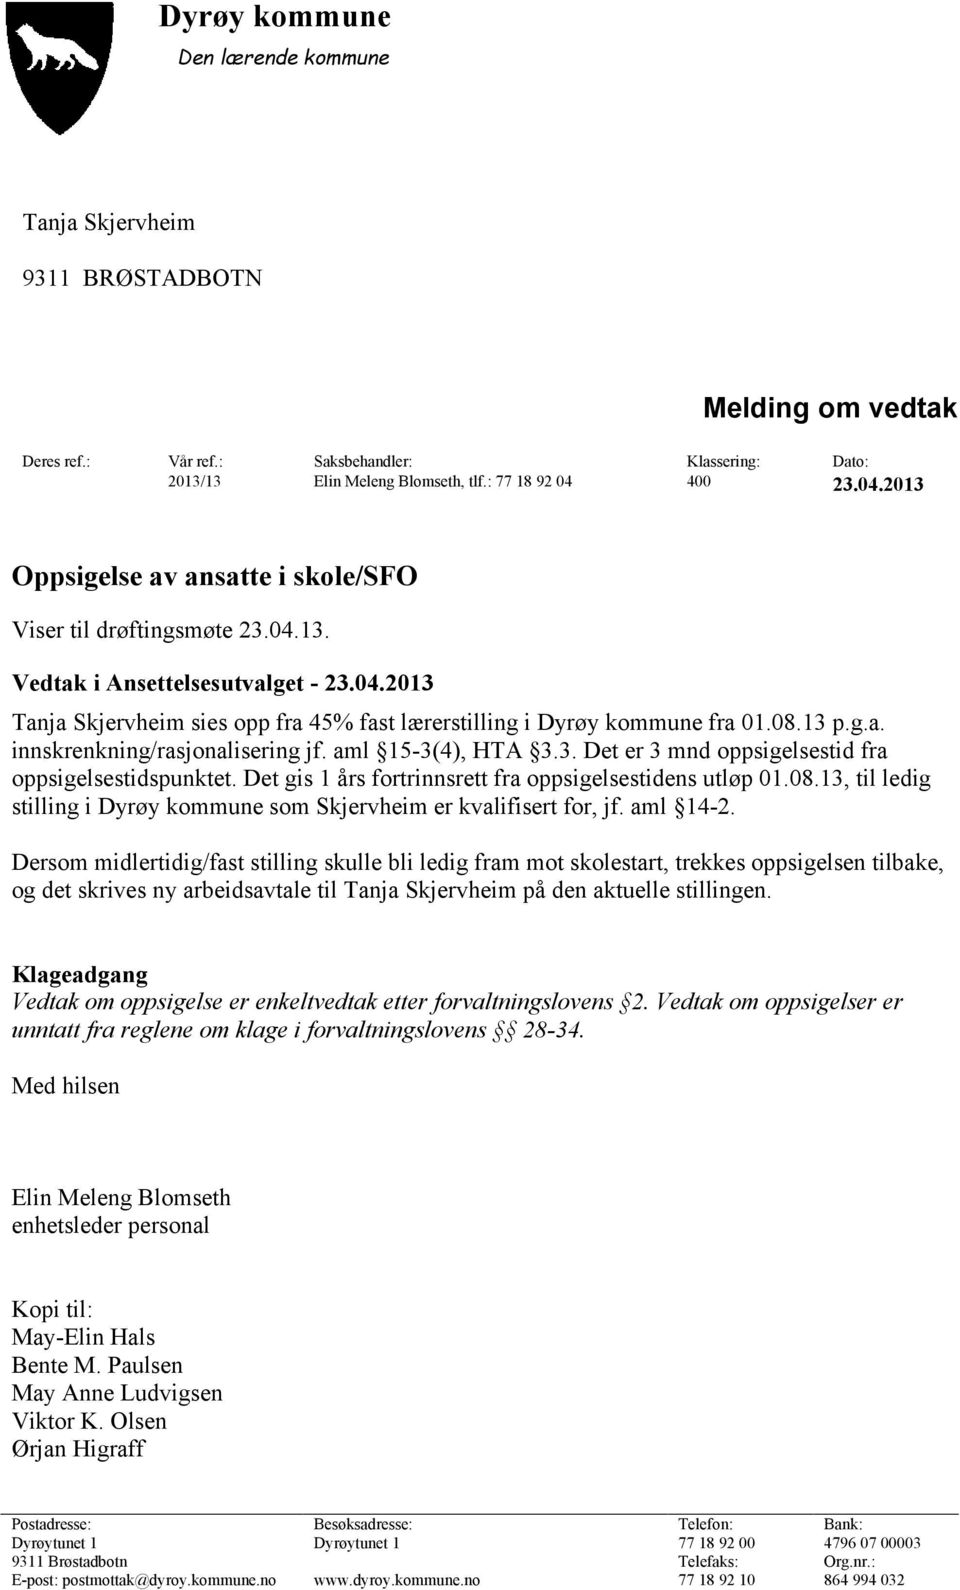 08.13 p.g.a. innskrenkning/rasjonalisering jf. aml 15-3(4), HTA 3.3. Det er 3 mnd oppsigelsestid fra oppsigelsestidspunktet. Det gis 1 års fortrinnsrett fra oppsigelsestidens utløp 01.08.13, til ledig stilling i Dyrøy kommune som Skjervheim er kvalifisert for, jf.